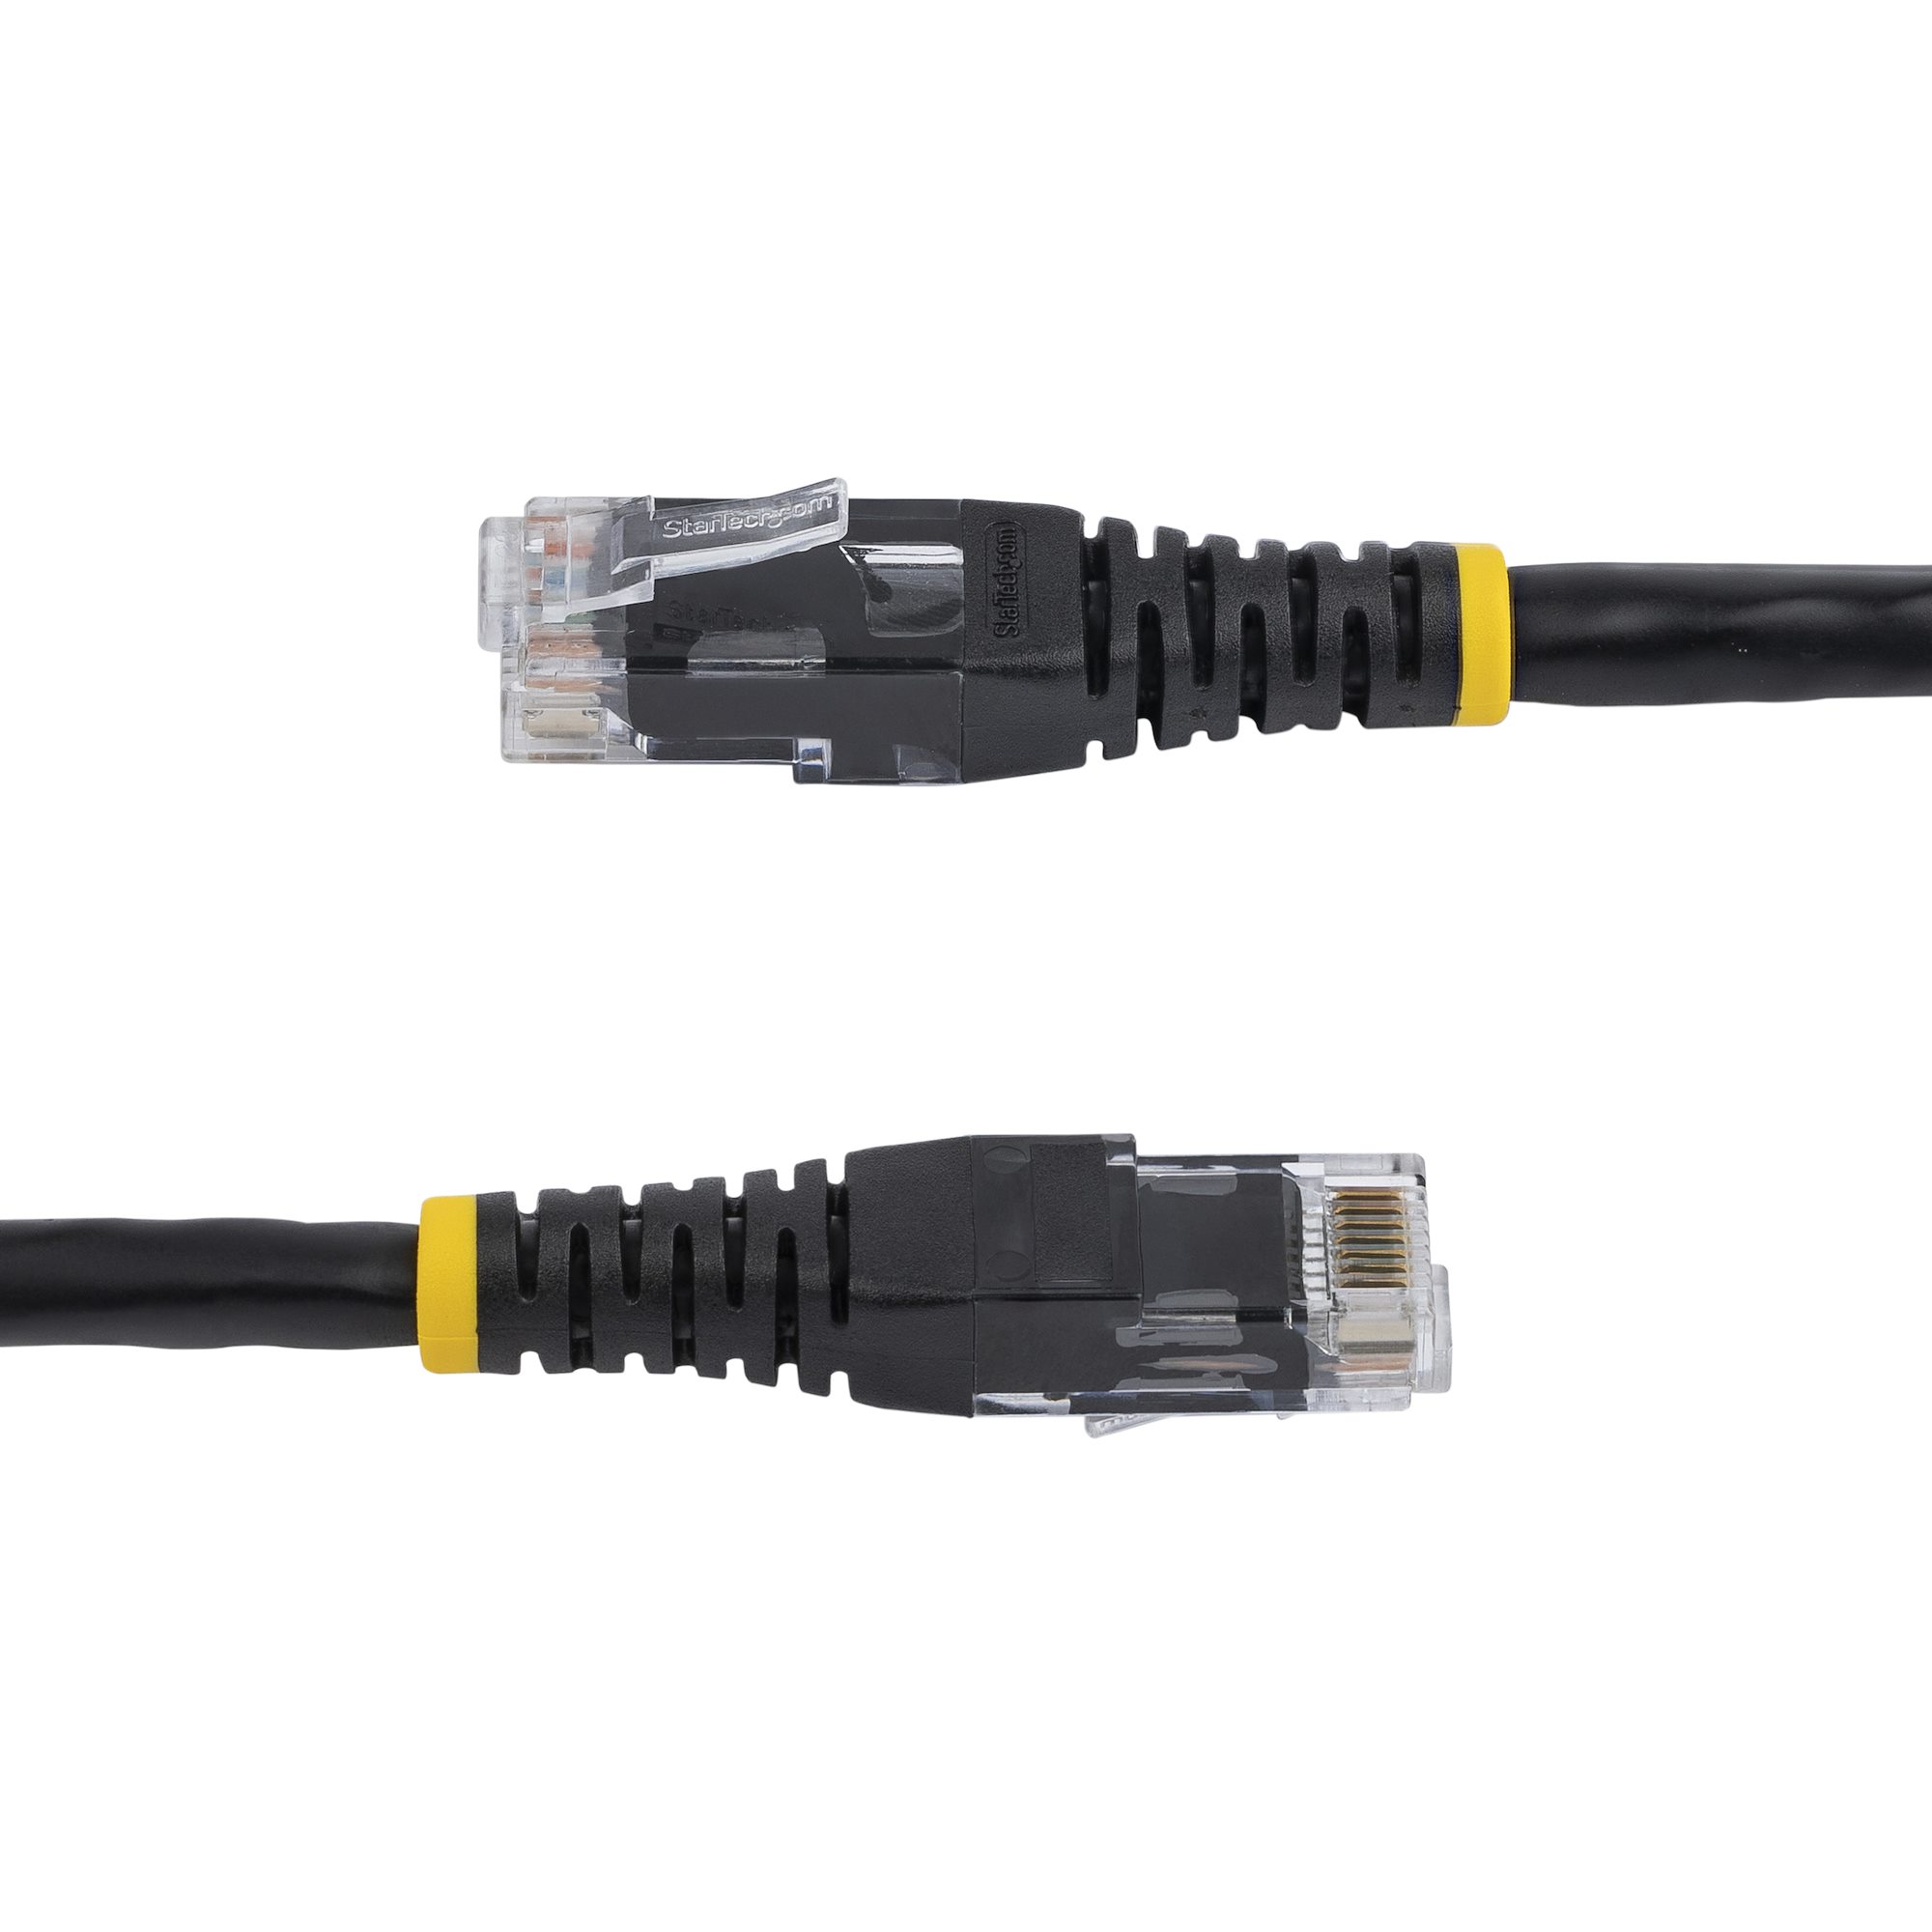 StarTech.com Cat6 Patch Cable - 6 ft. Black Ethernet Cable